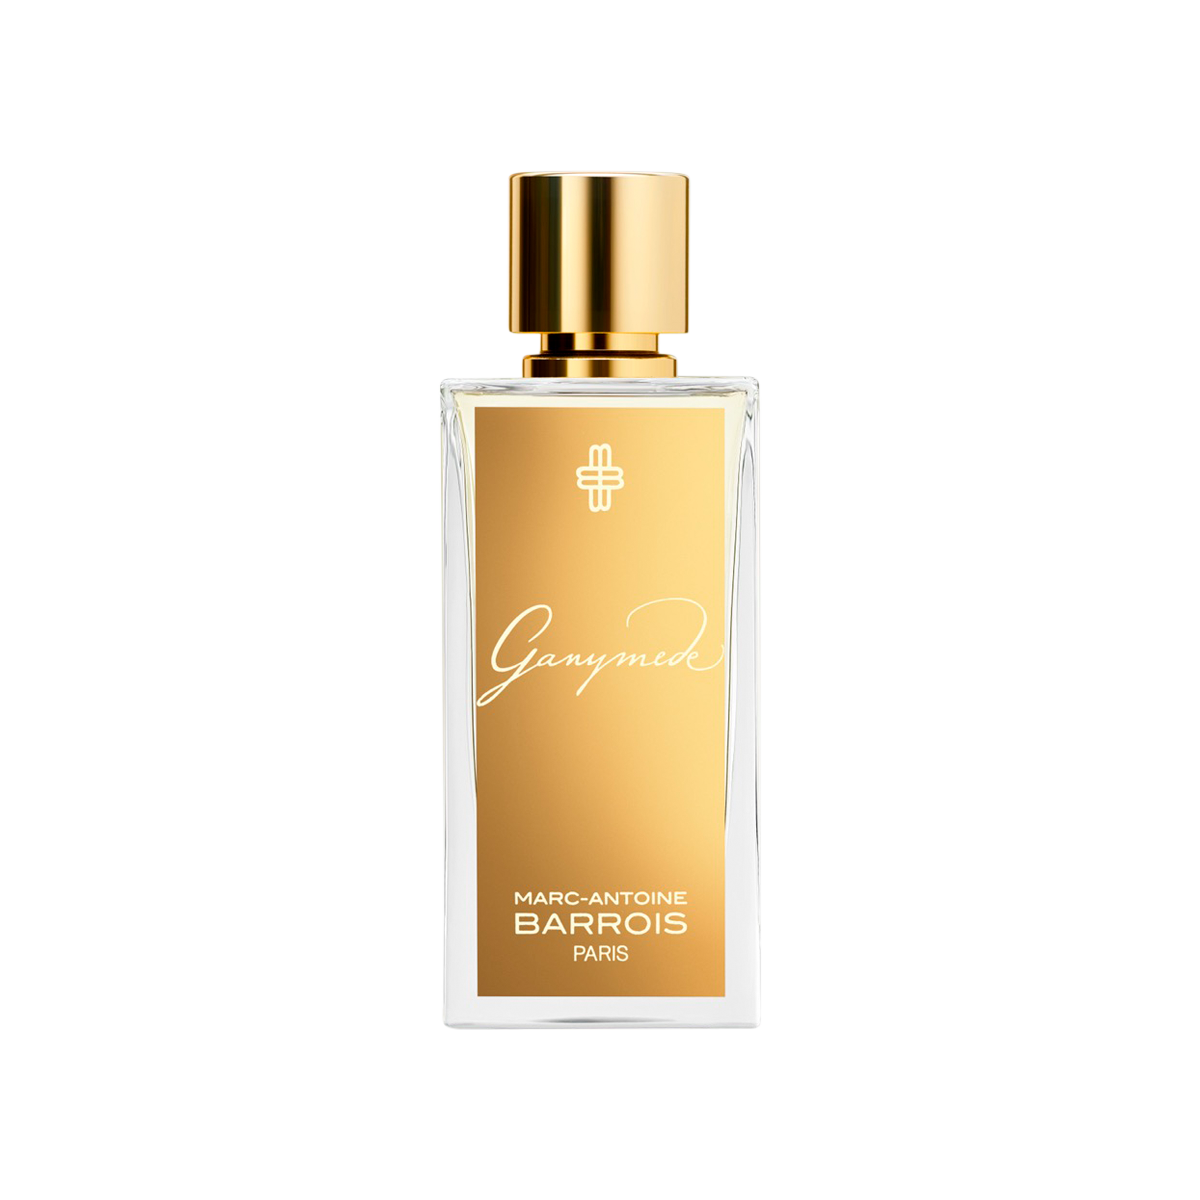 Marc-Antoine Barrois - Ganymede Eau de Parfum